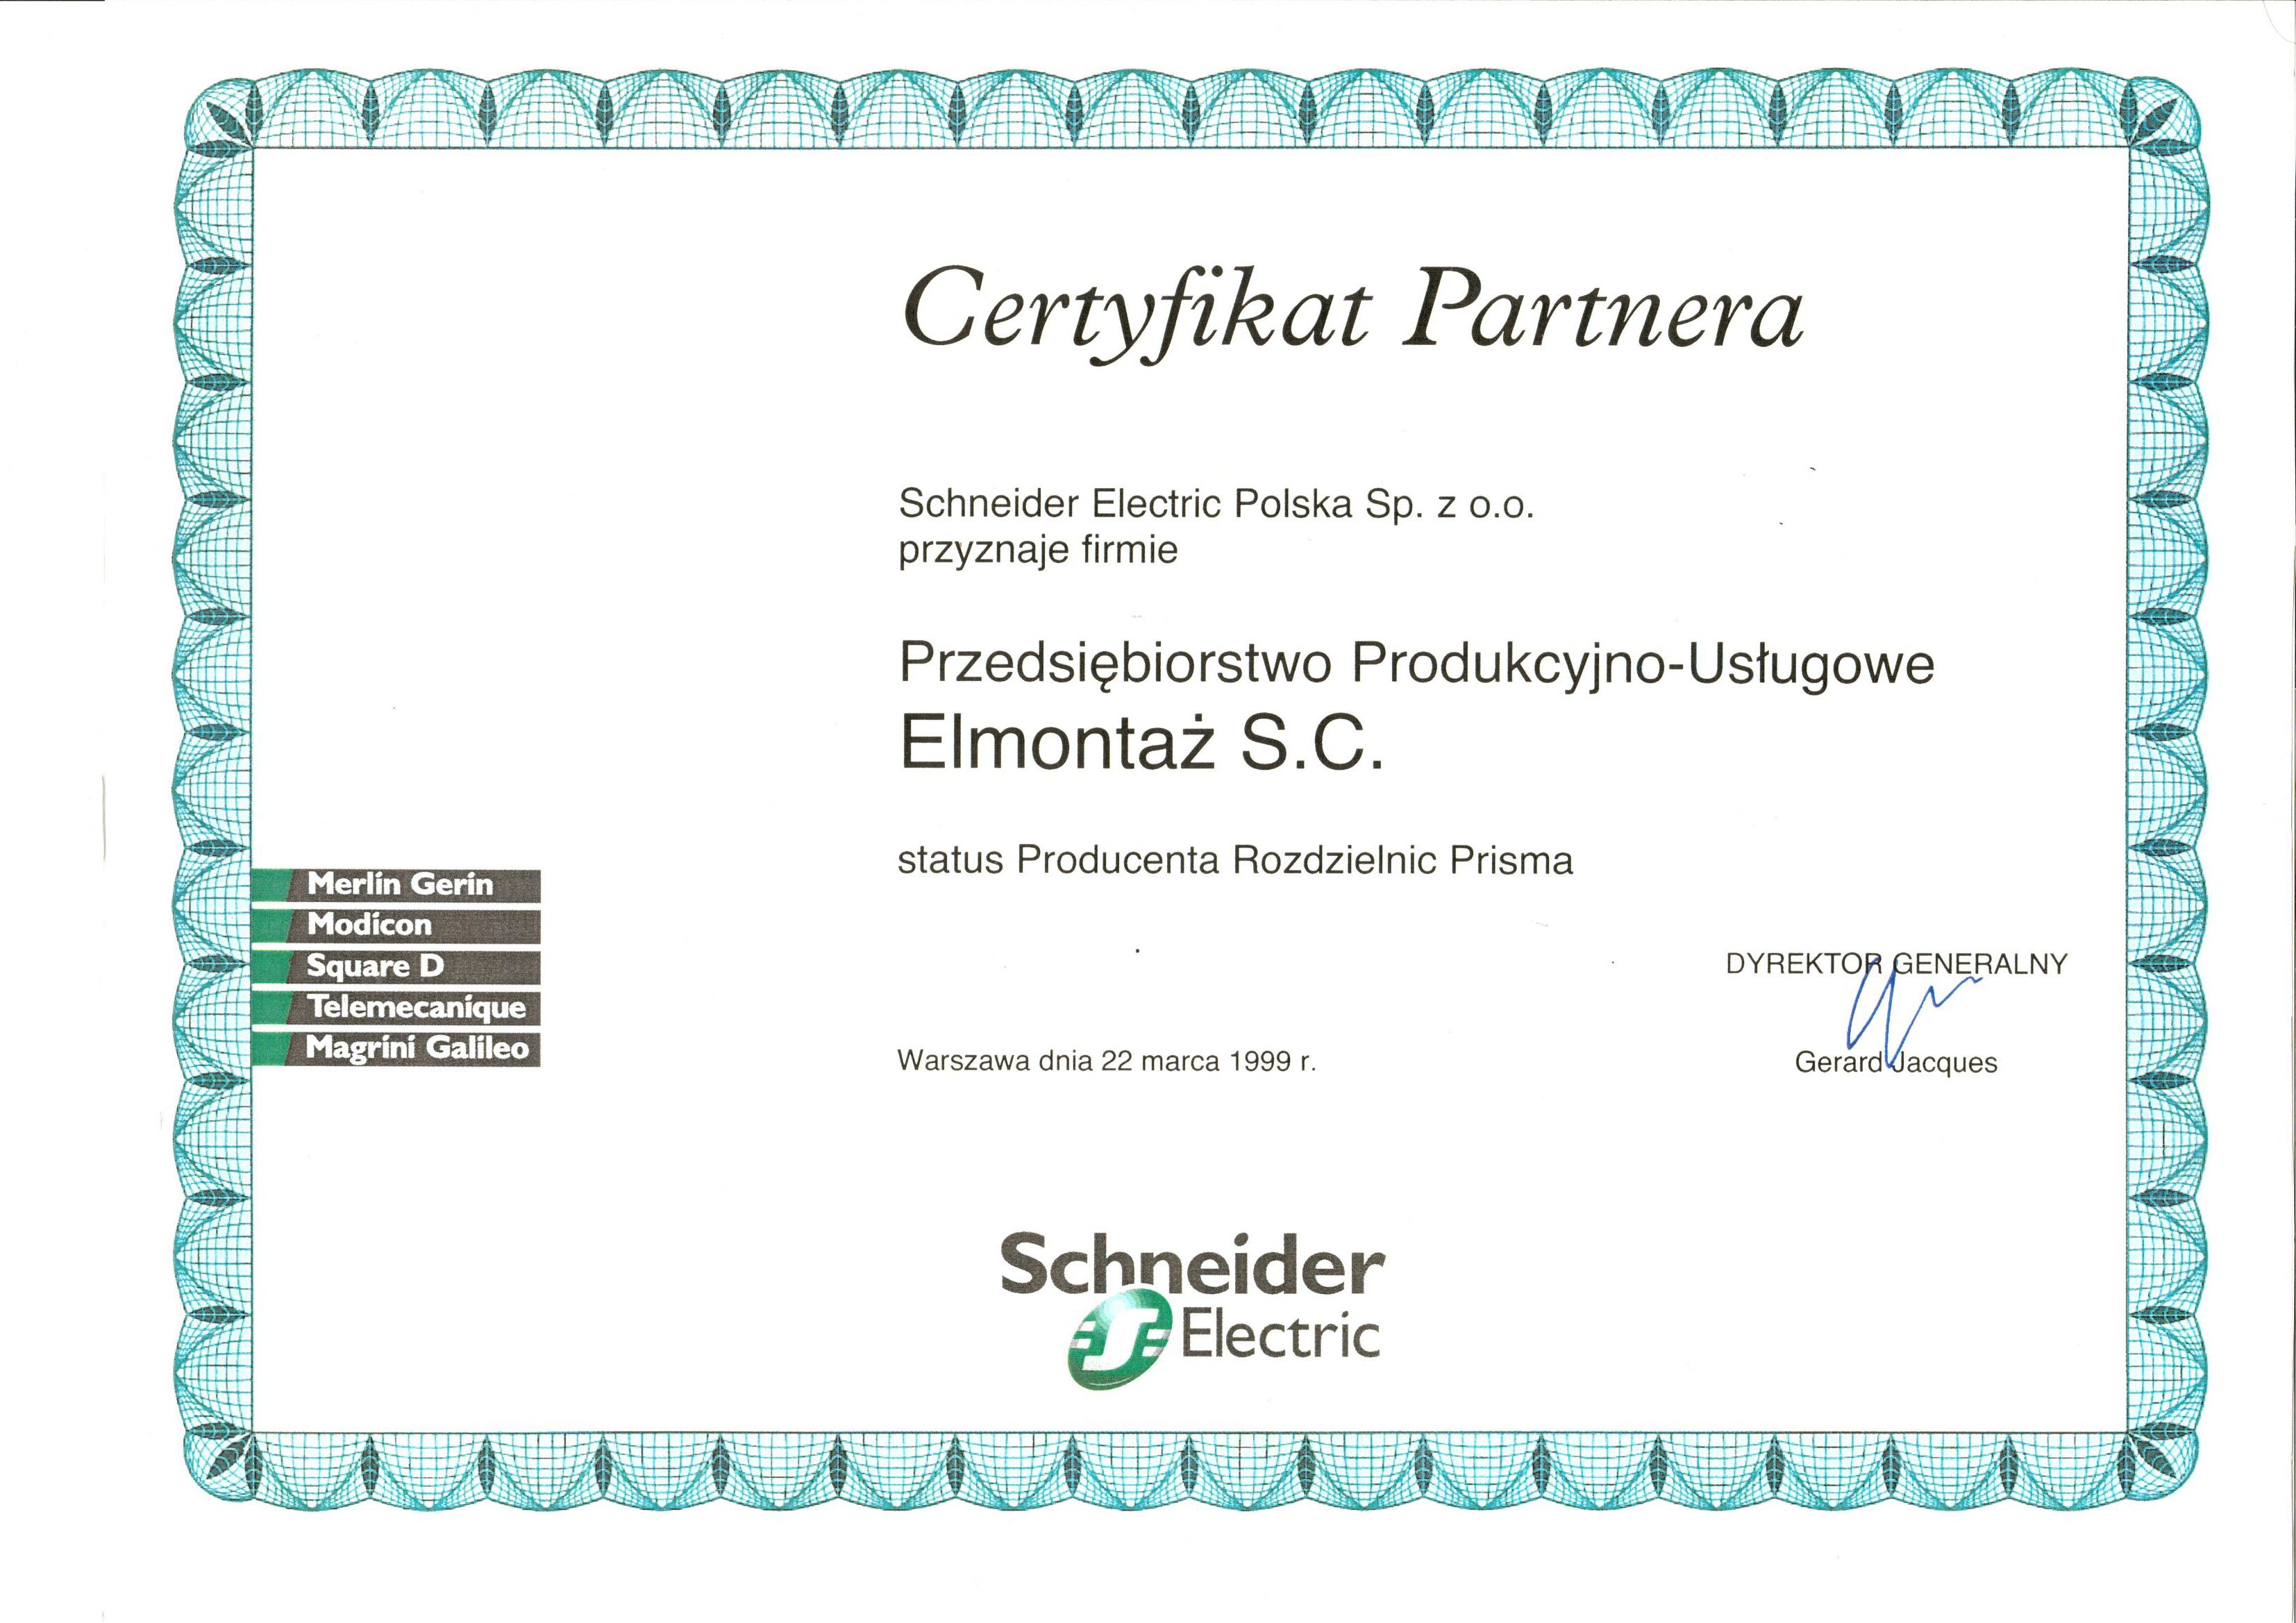 Certyfikat Partnera Schneider Electric